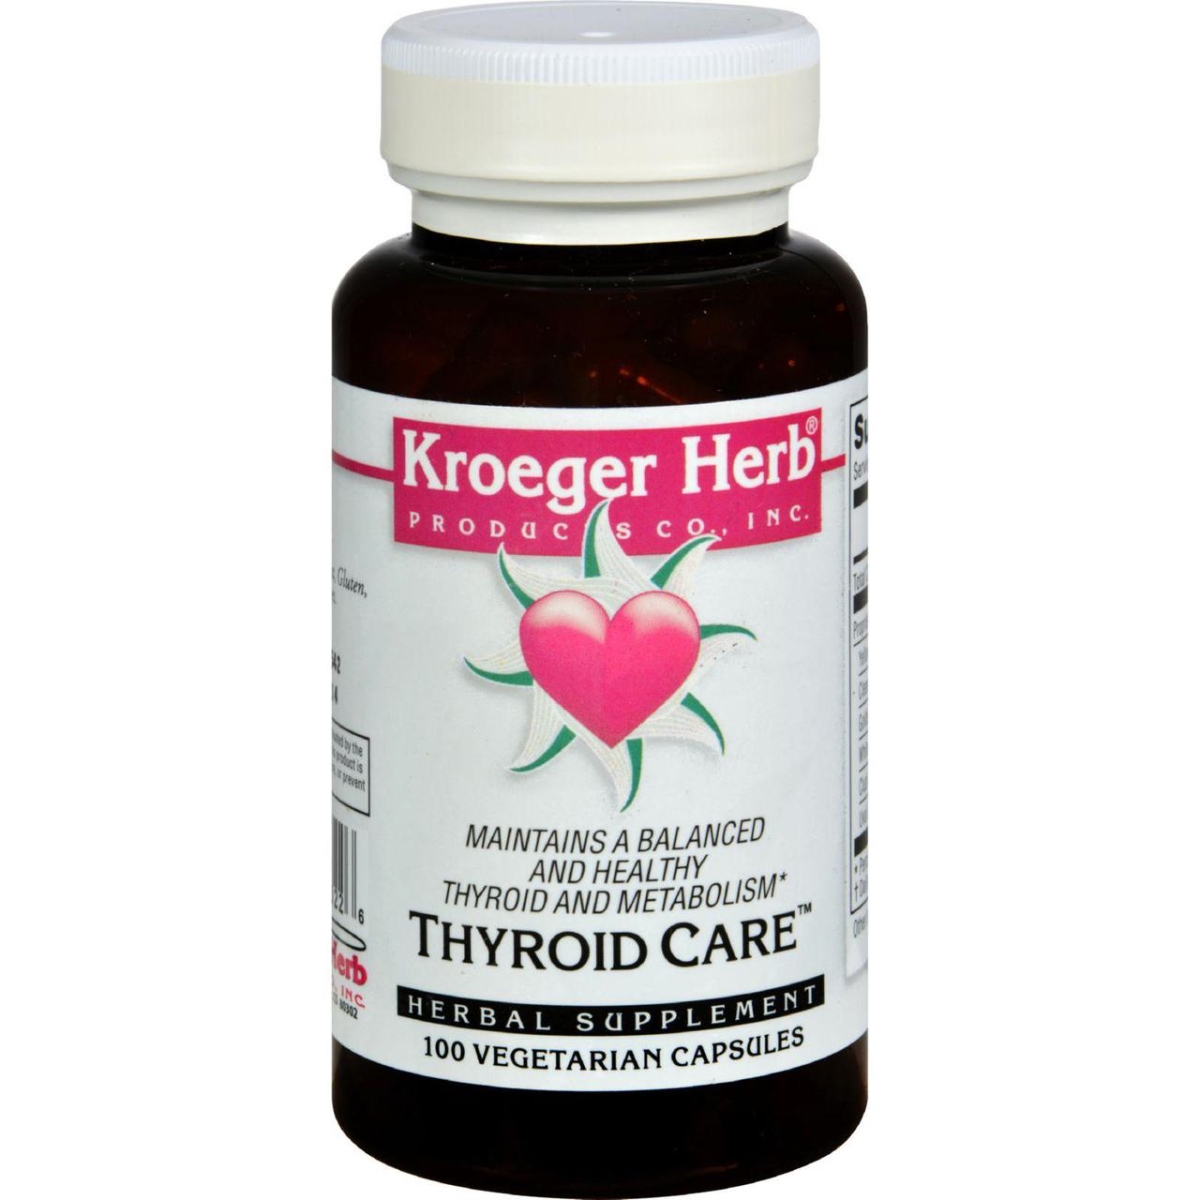 Hg0420232 Thyroid Care - 100 Capsules